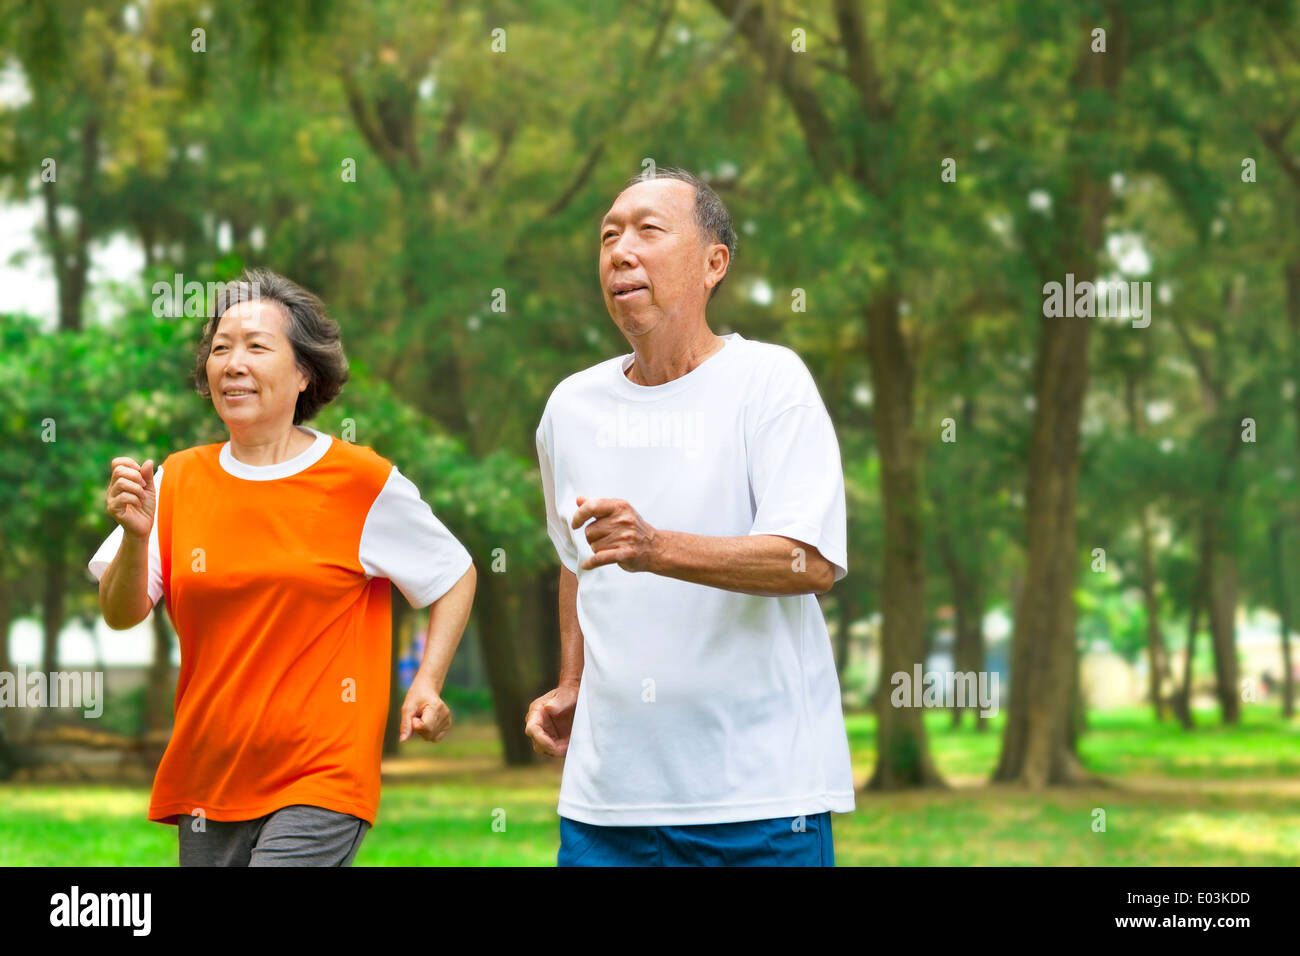 gerne älteres Paar zusammen laufen im park Stockfoto